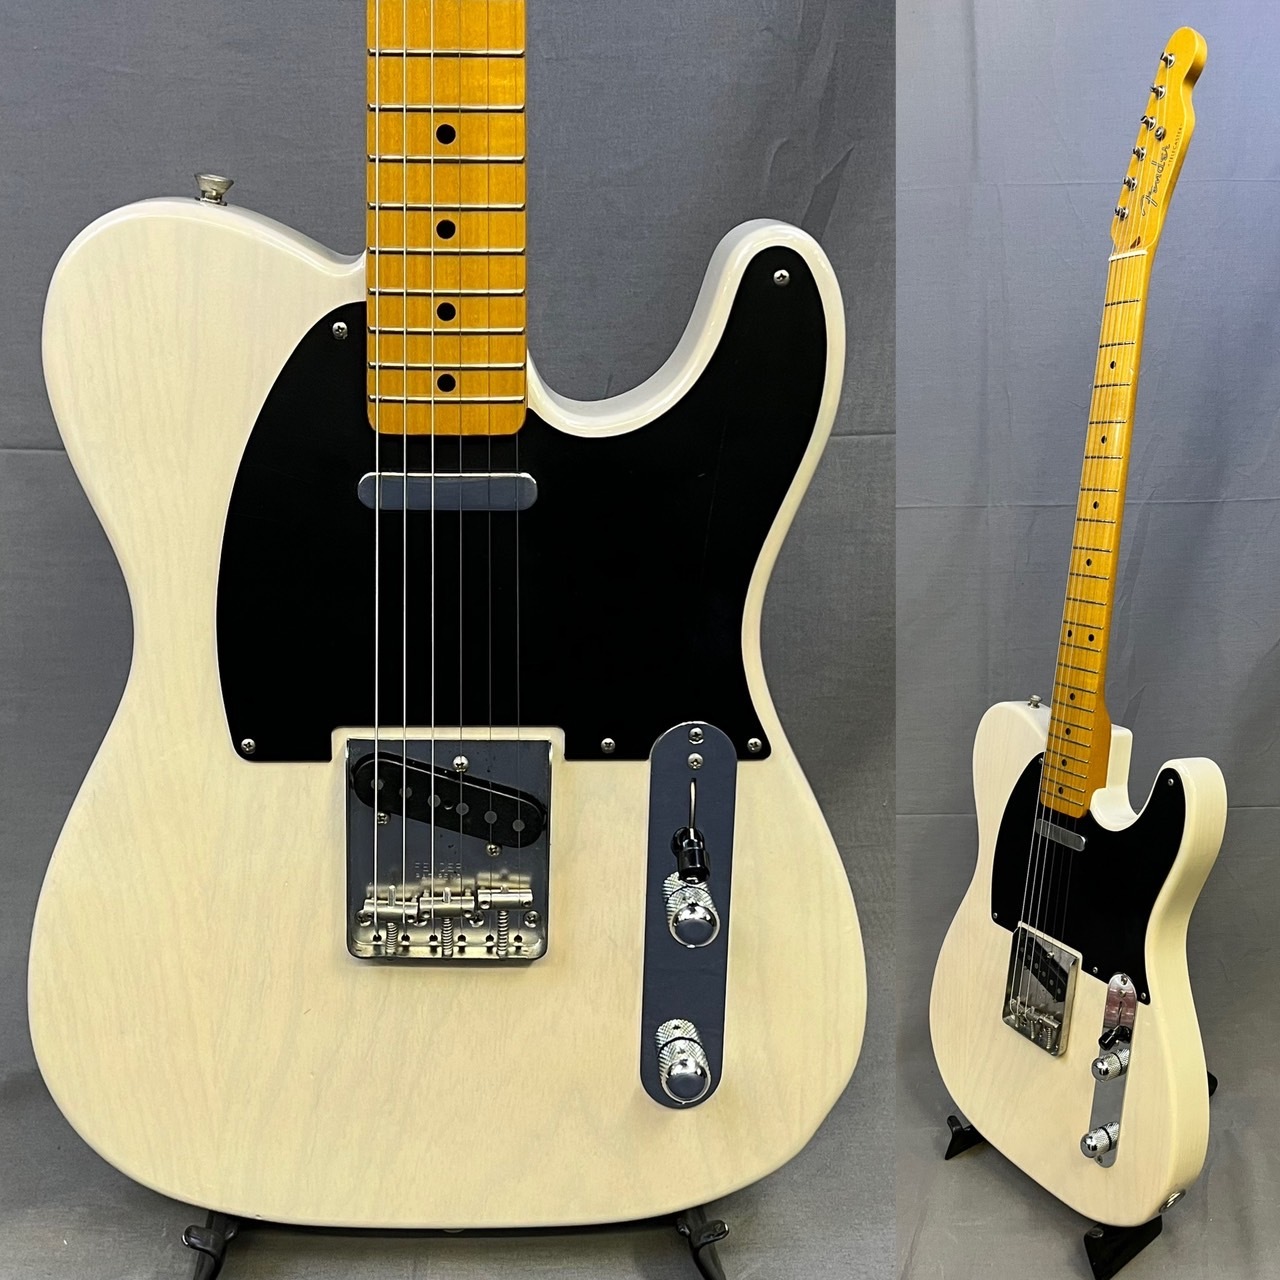 超激得大人気Fender USA テレキャスター レフティ Fender Mod shop 別注品 フェンダー